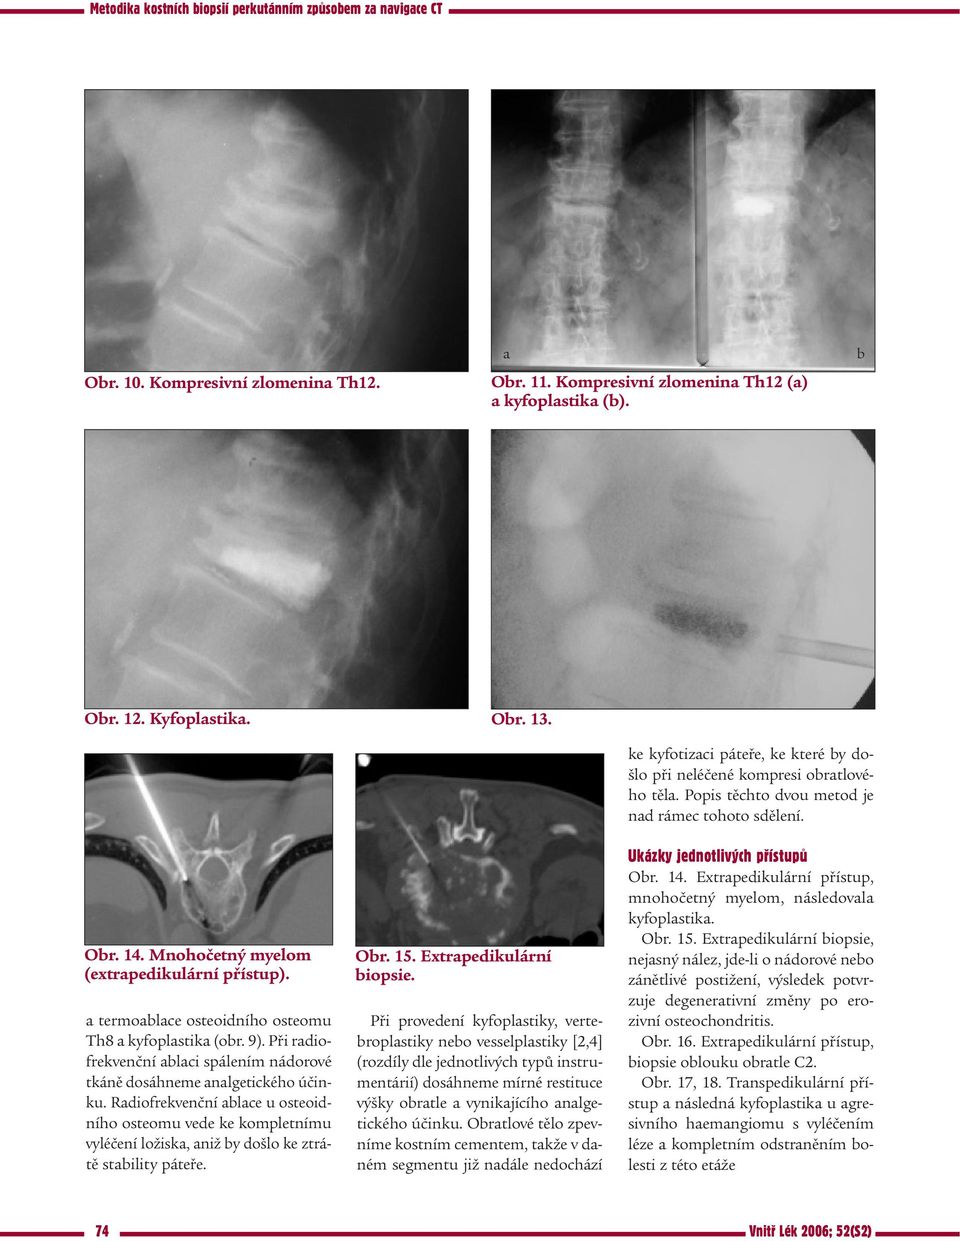 Radiofrekvenční ablace u osteoidního osteomu vede ke kompletnímu vyléčení ložiska, aniž by došlo ke ztrátě stability páteře. Obr. 15. Extrapedikulární biopsie.